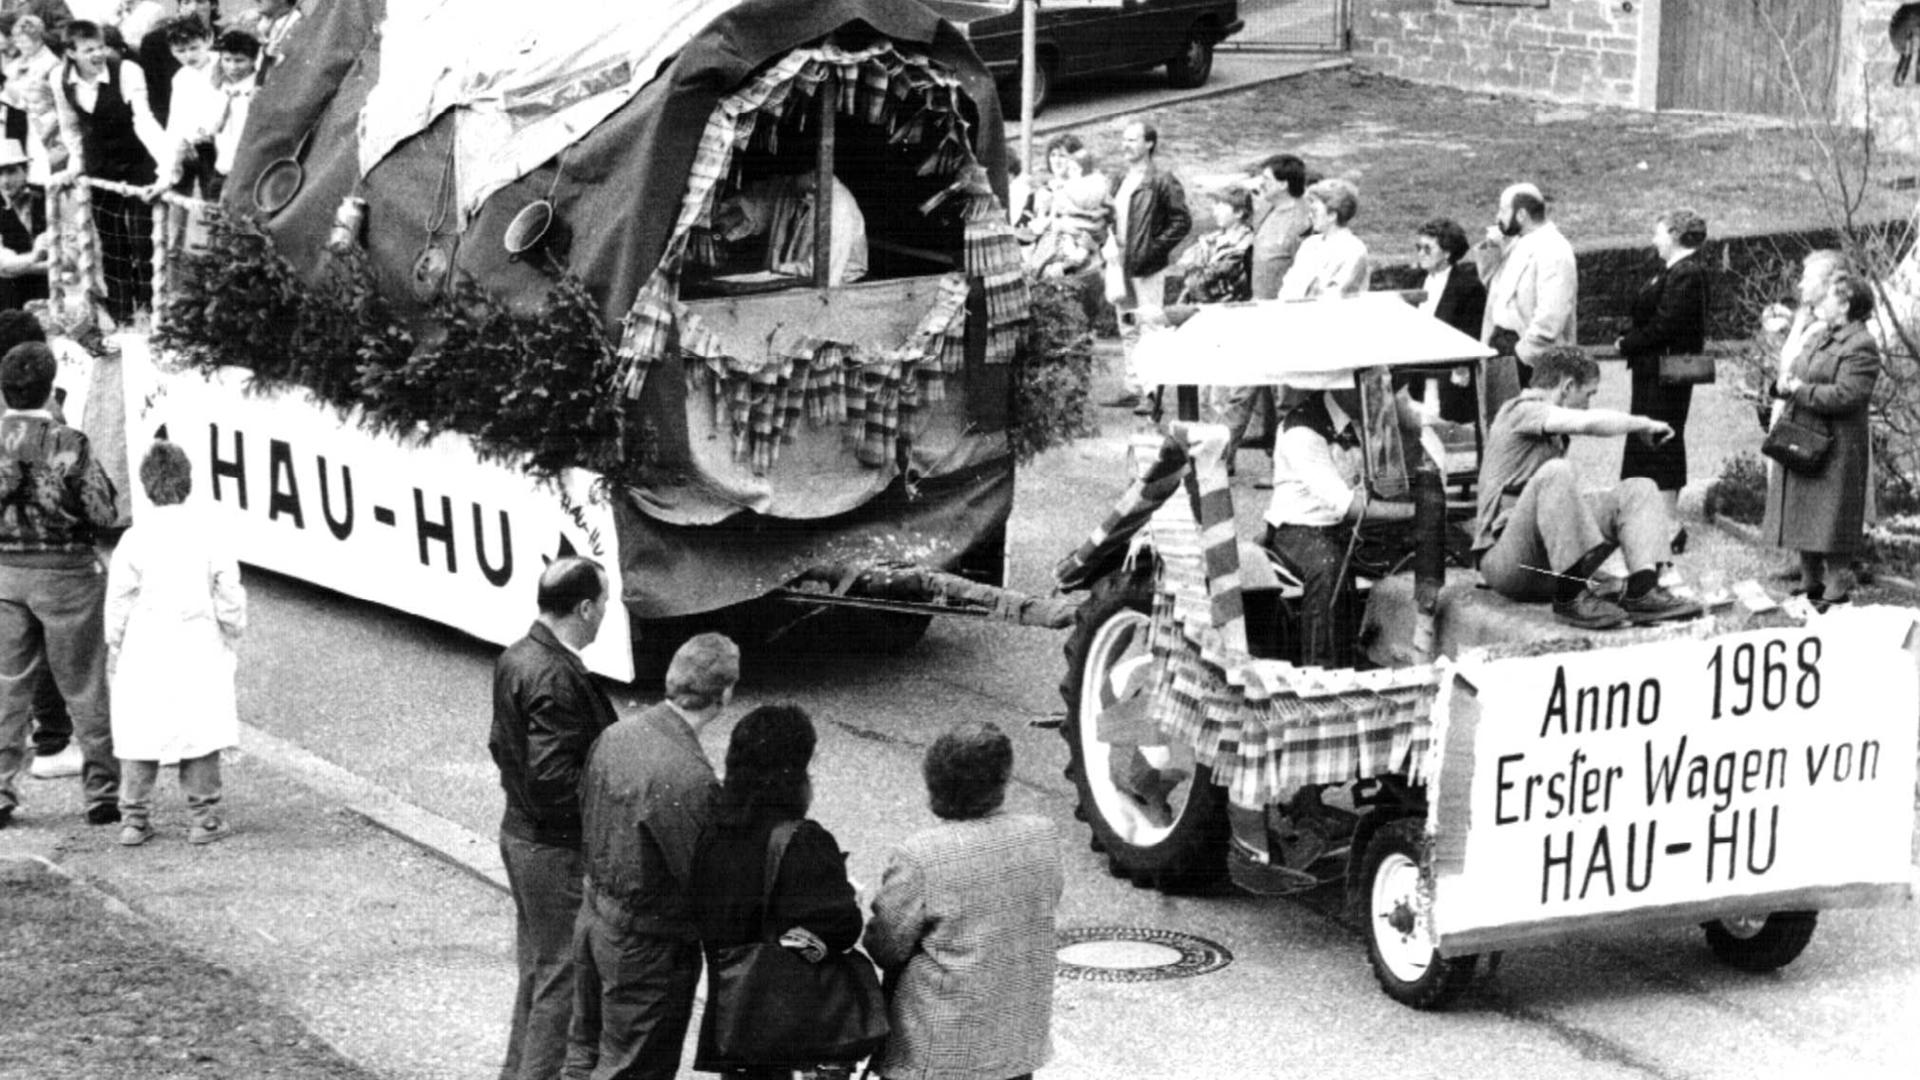 Ein Umzug wenige Jahre nach der Gründung zeigt den ersten Umzugswagen von 1968.